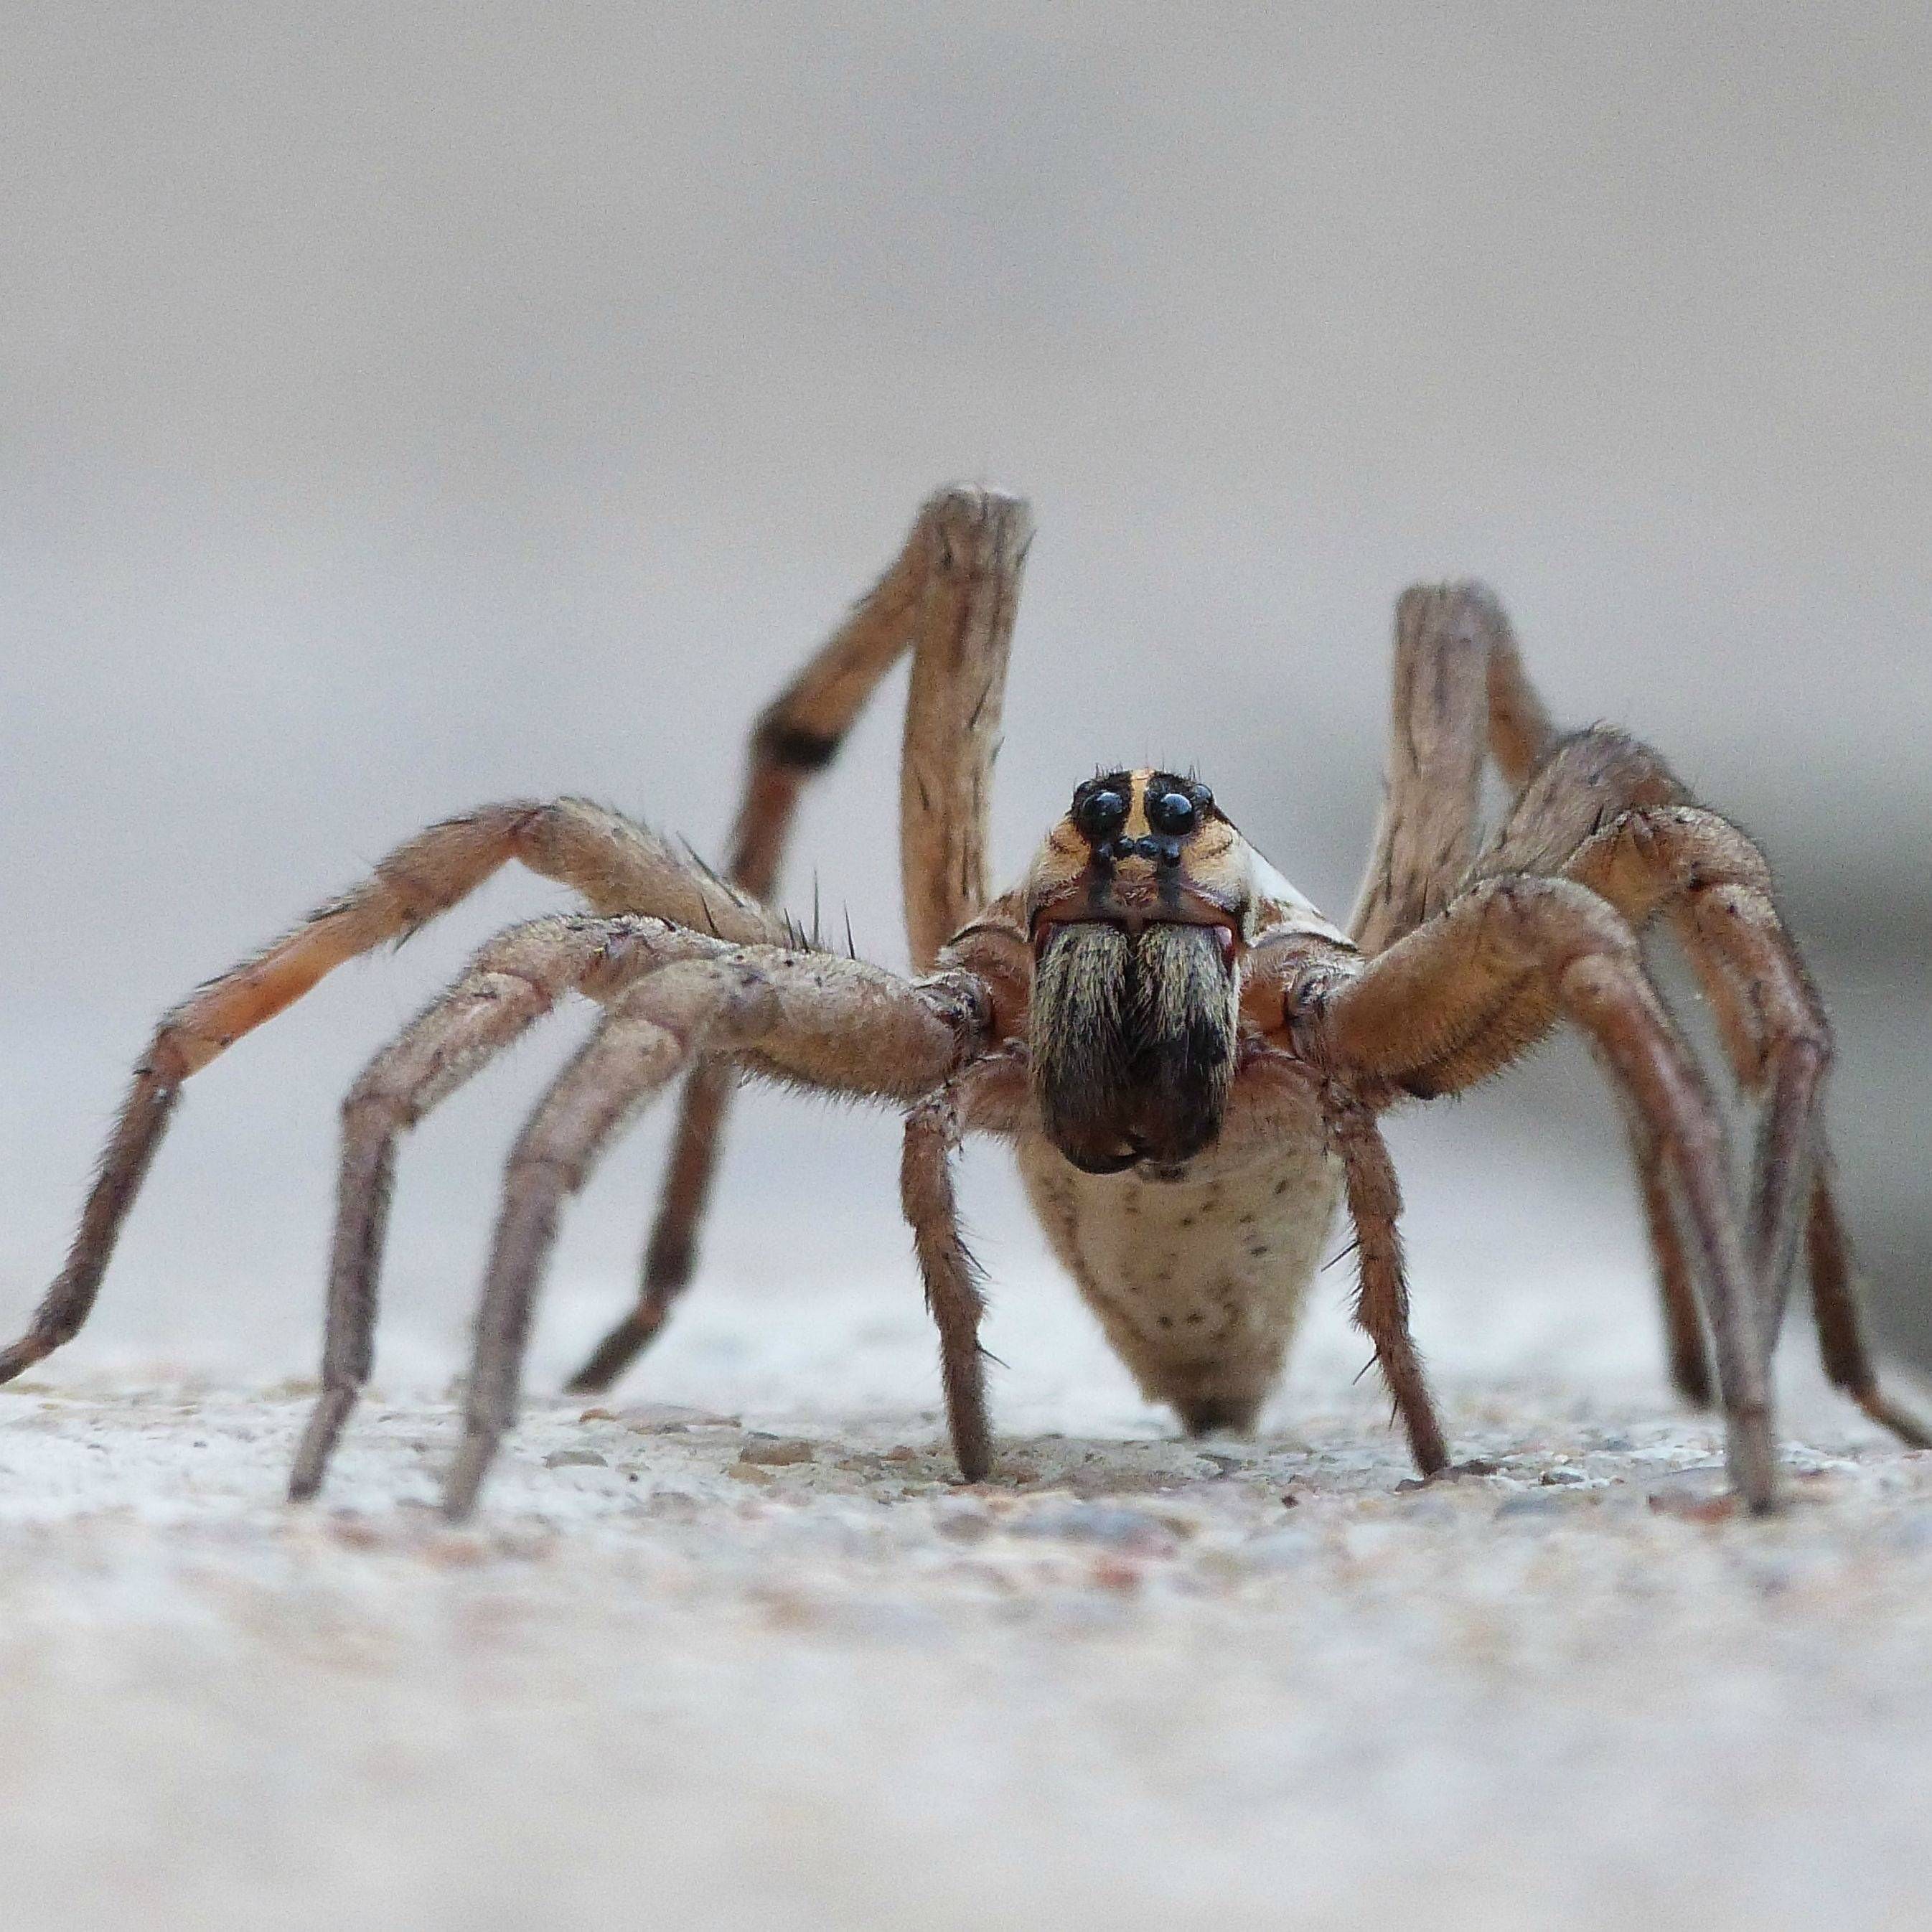 Какой паук самый большой на земле — фото и описание крупнейших пауков планеты